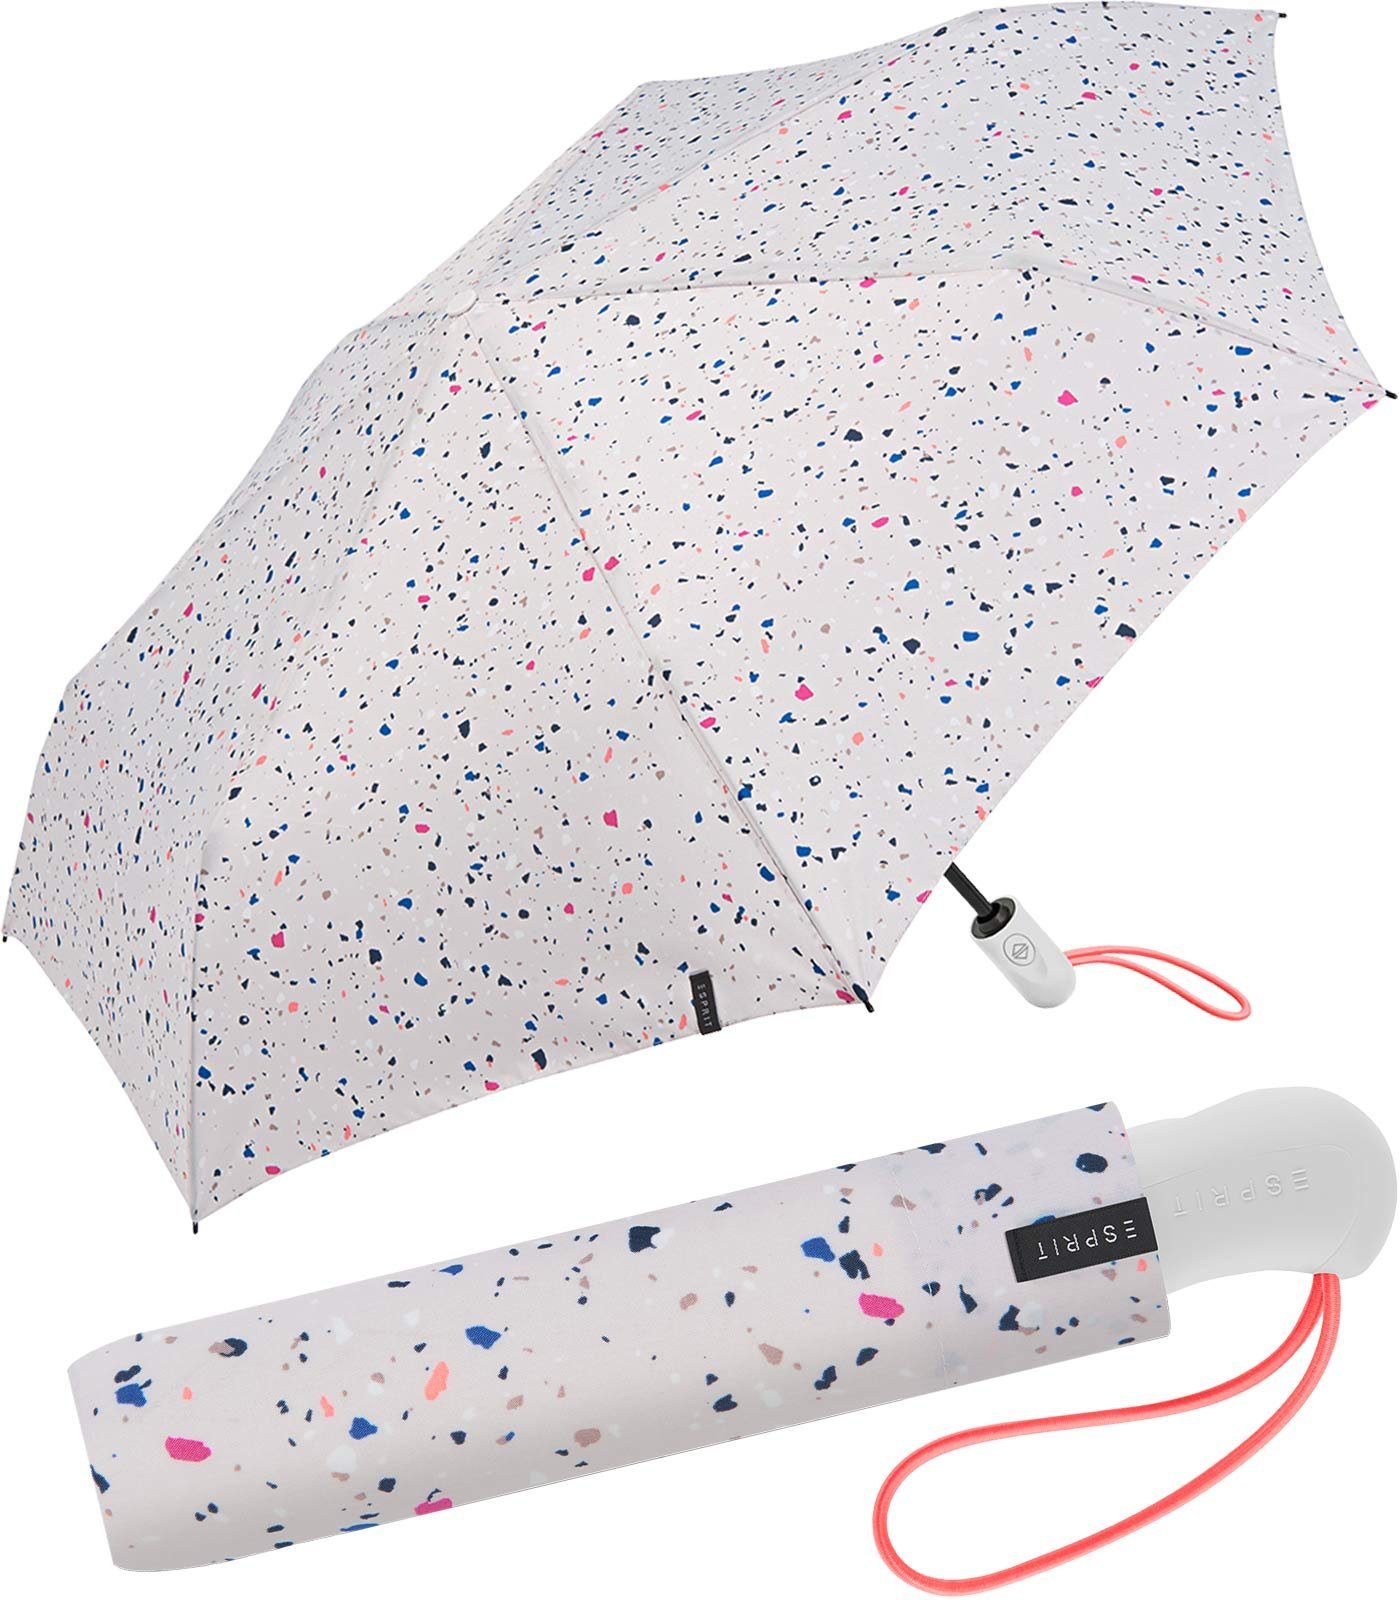 Esprit Taschenregenschirm Easymatic Light - Terrazzo Dots - weiß, stabil, praktisch, mit Auf-Zu-Automatik